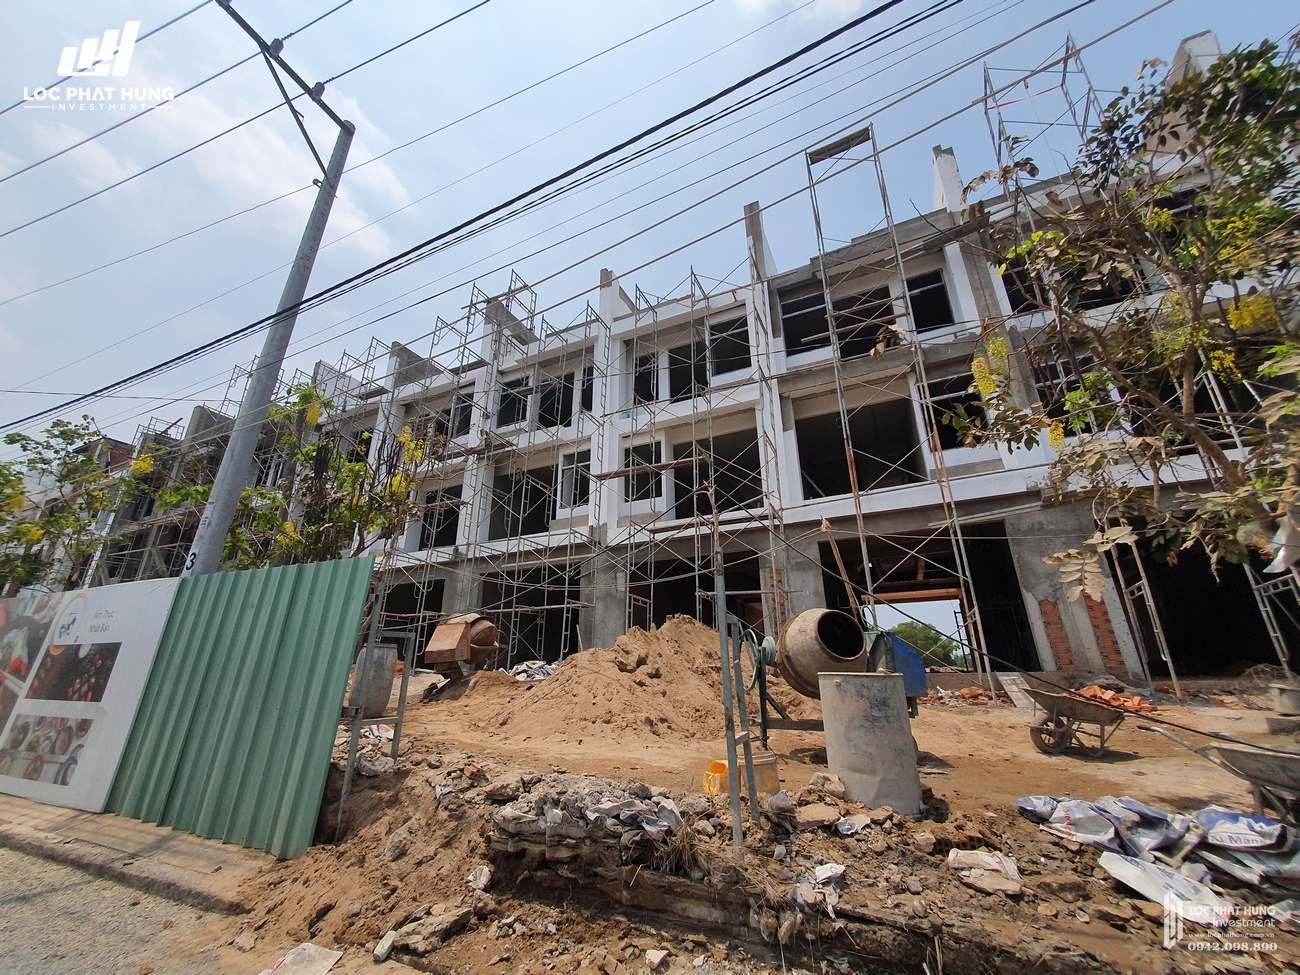 Tiến độ dự án nhà phố Takara Residence Thủ Dầu Một Chánh Nghĩa chủ đầu tư Thành Nguyên